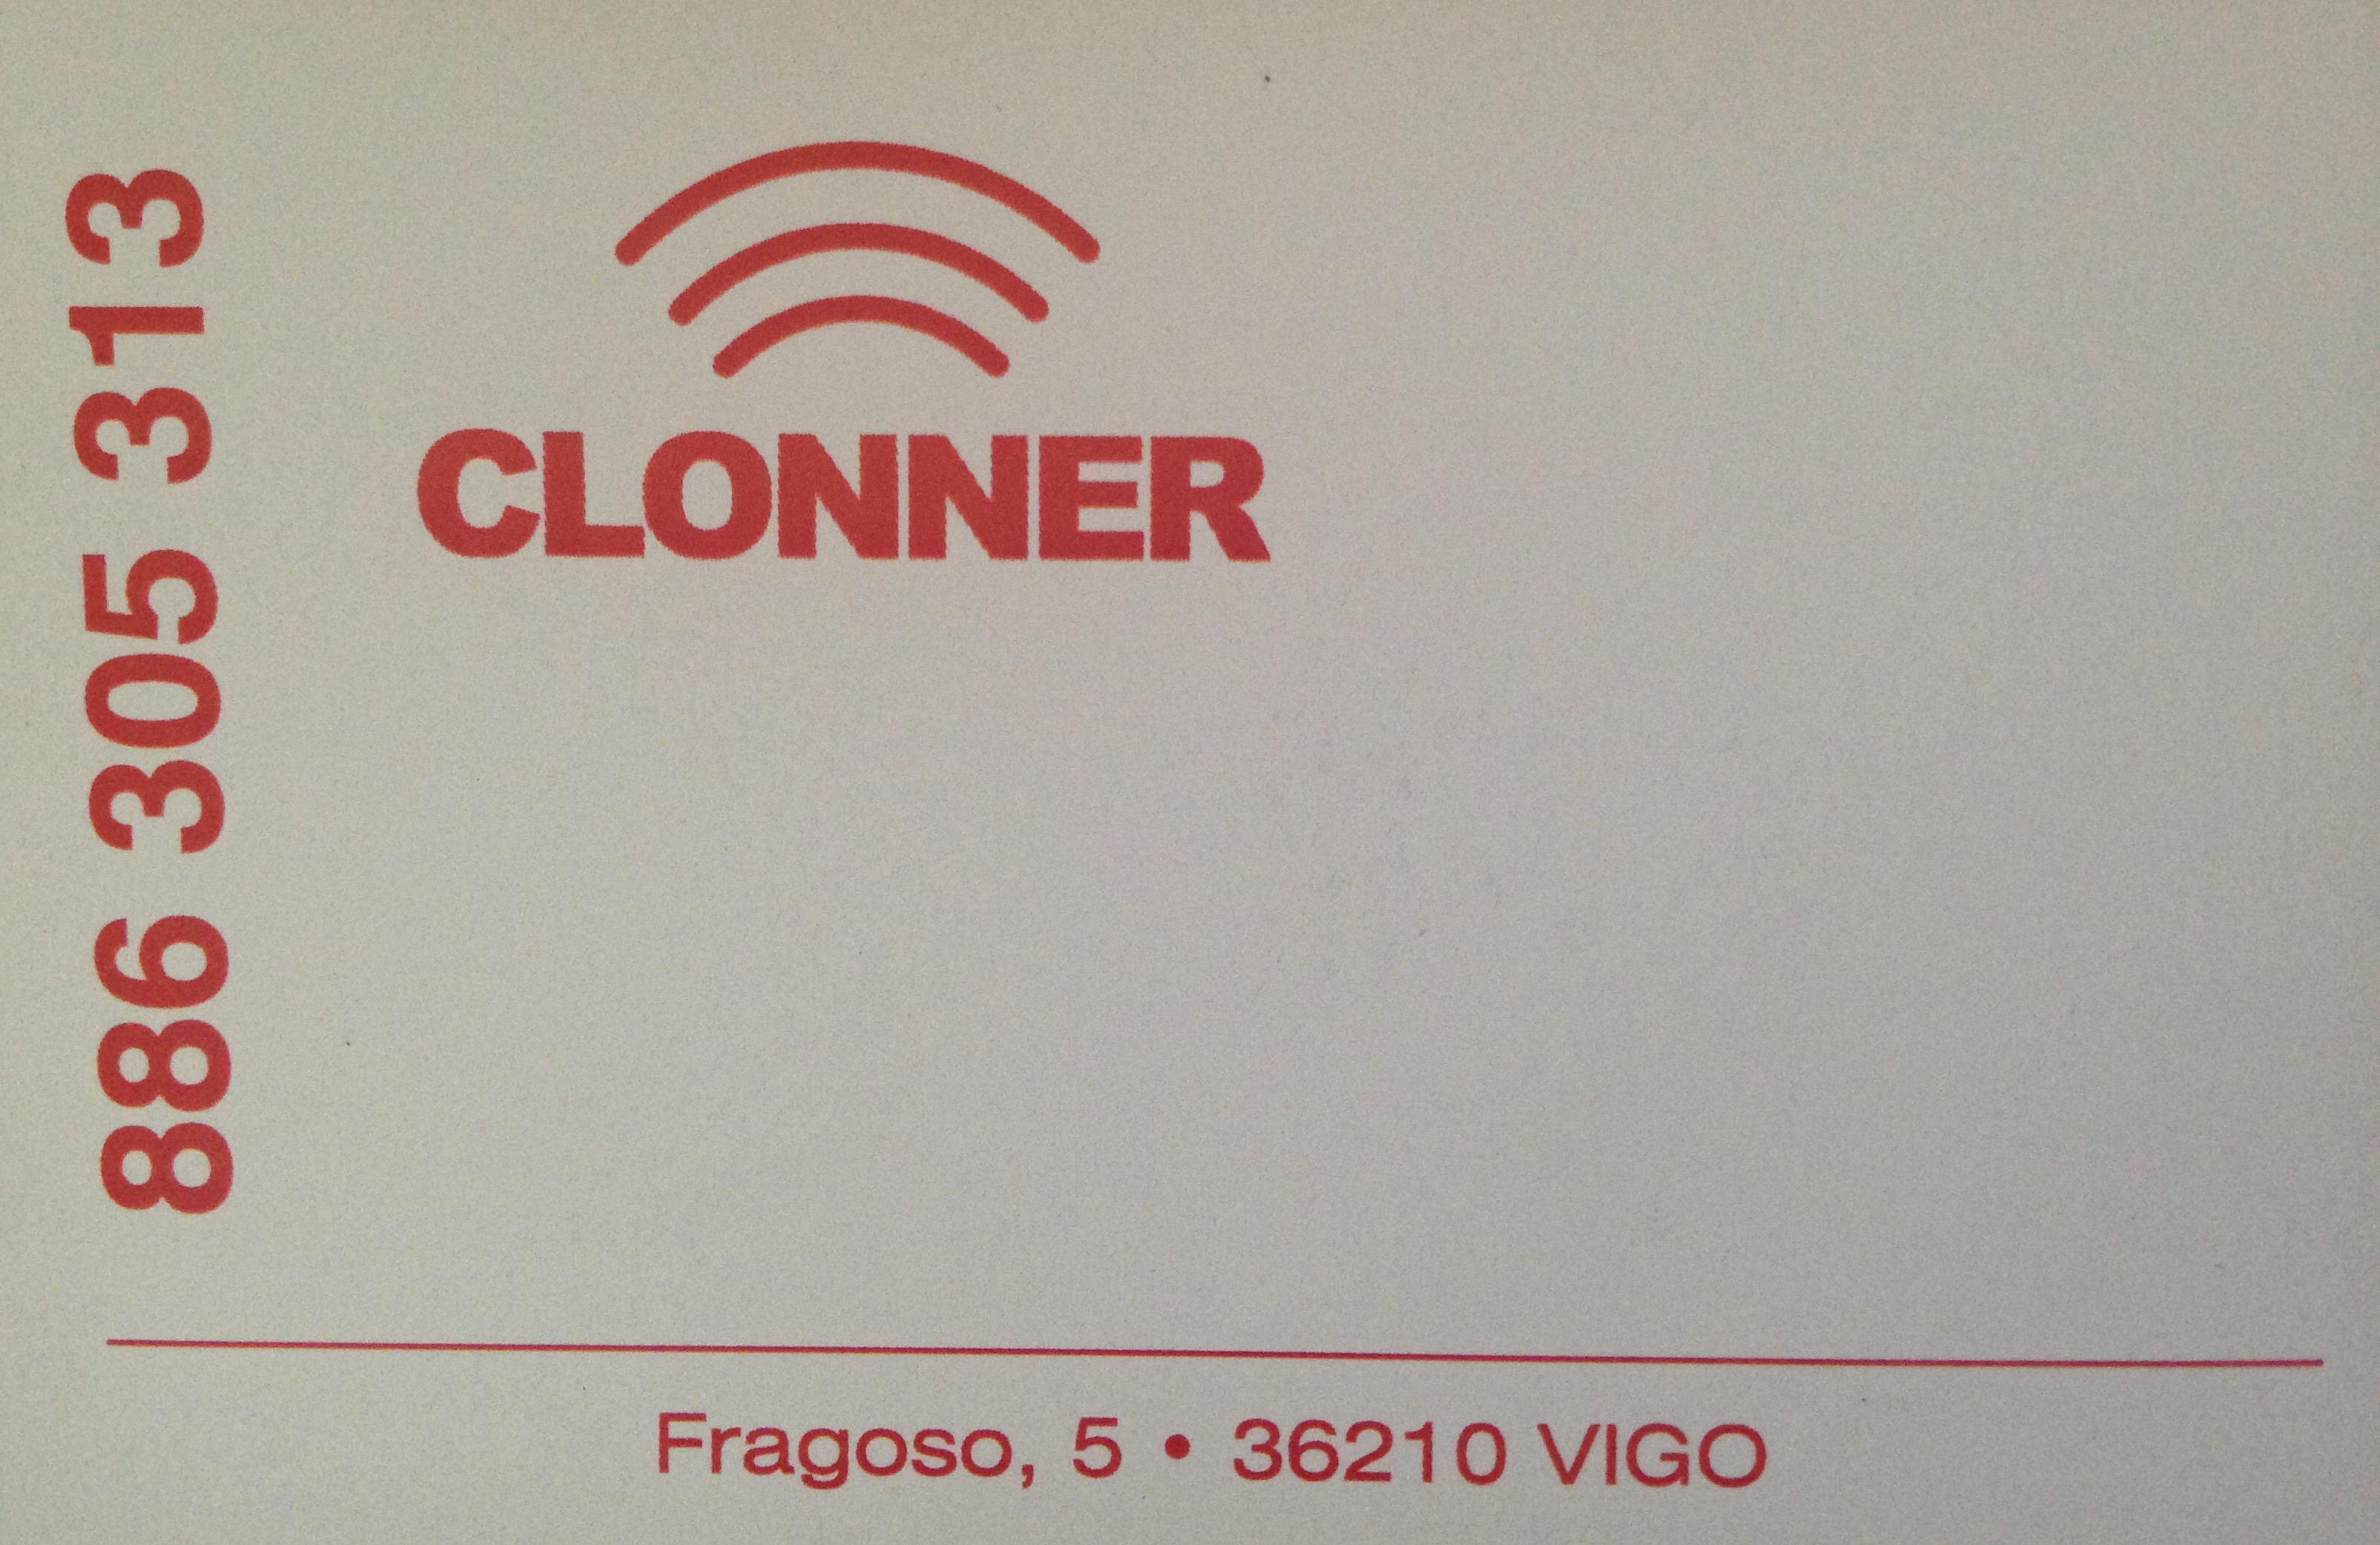 Clonner Vigo